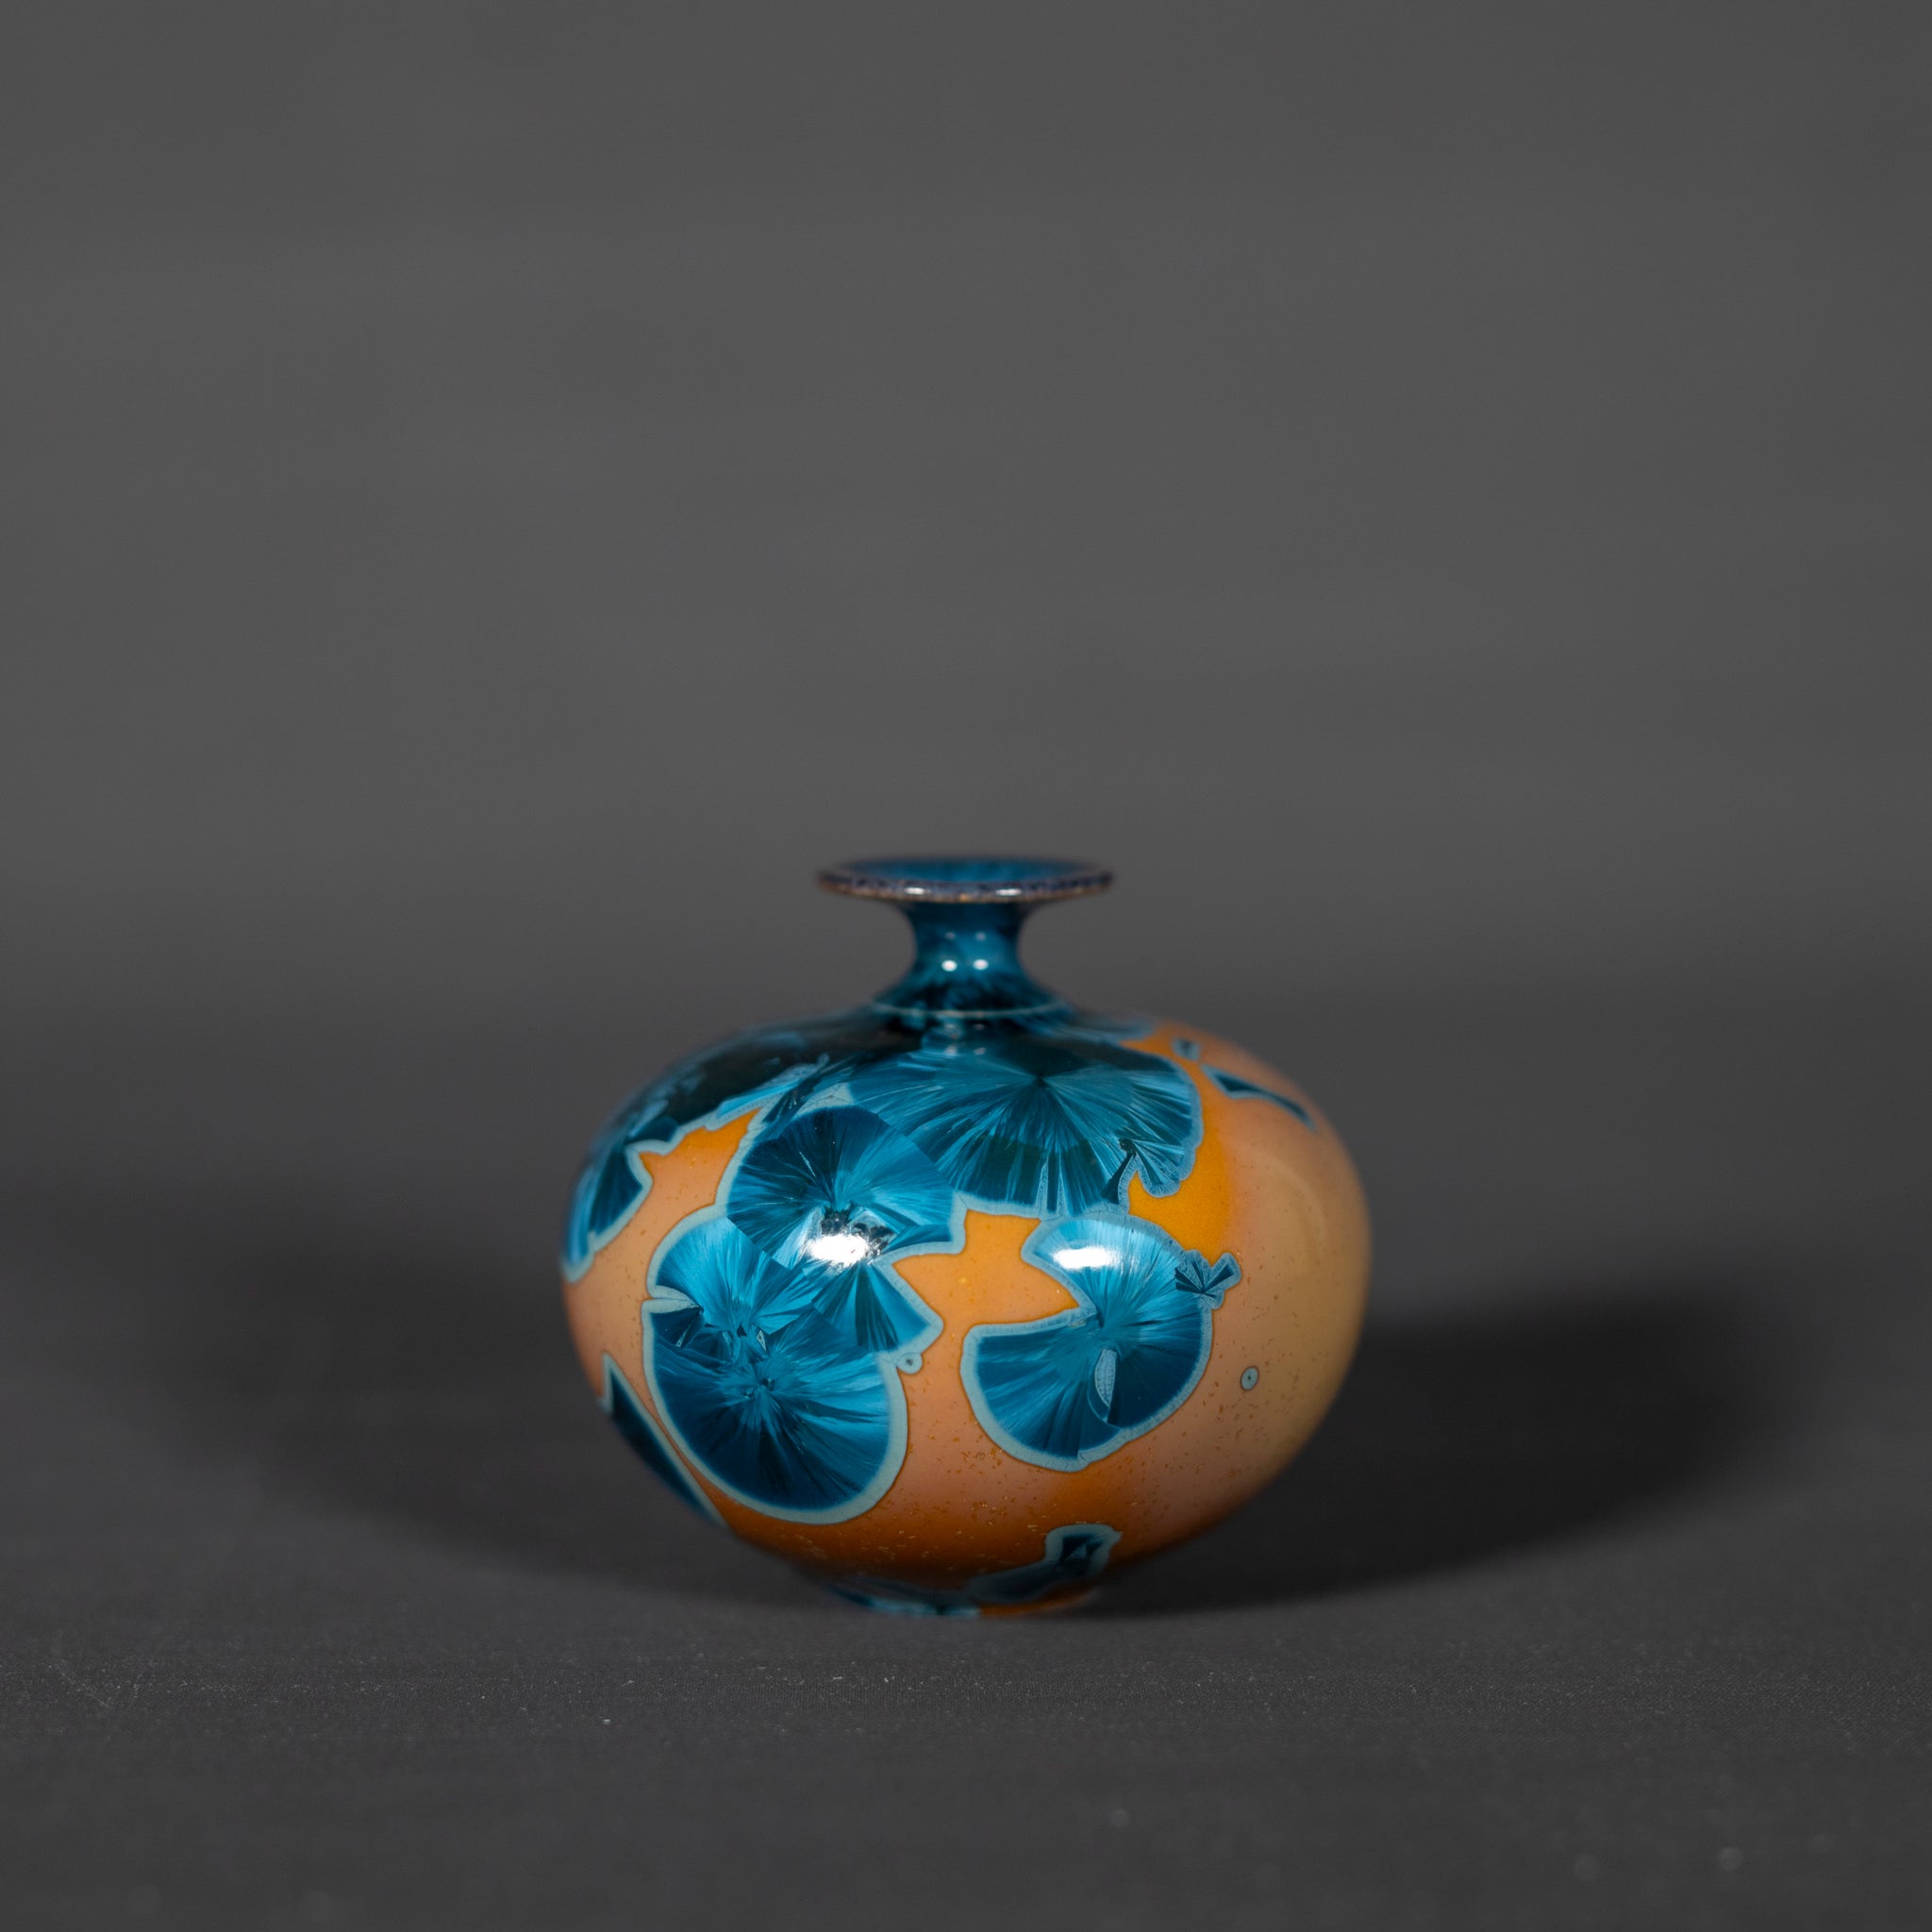 Miniature Yellow & Blue Crystalline Vase